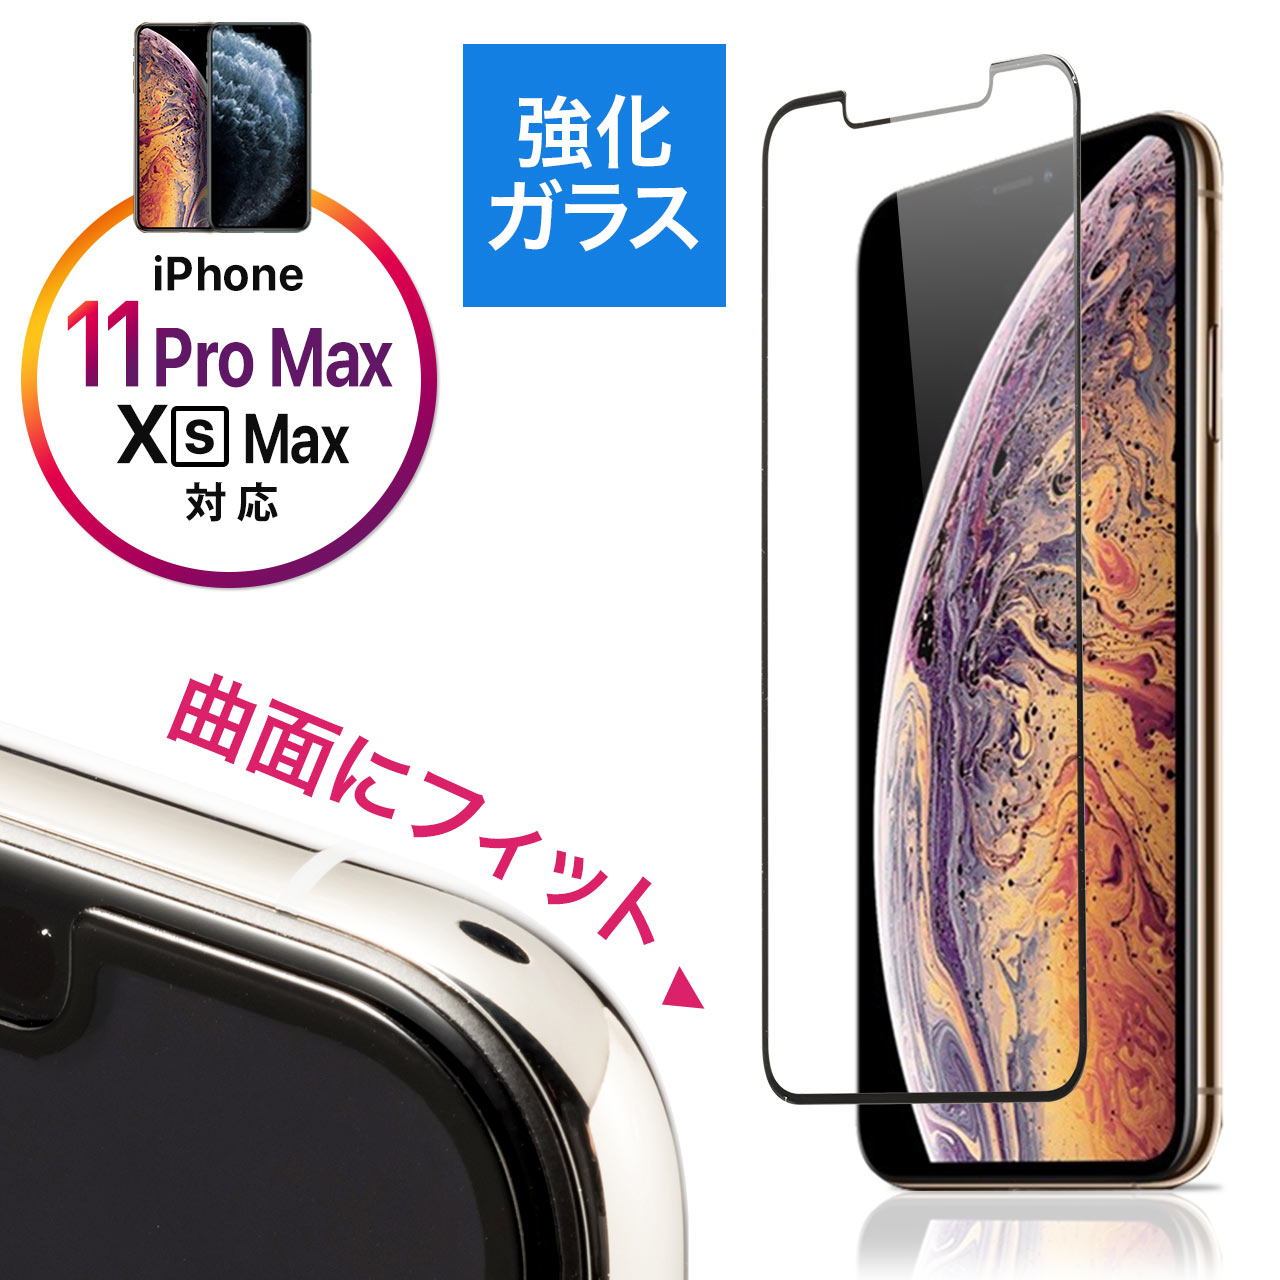 Iphone11 Pro Max Iphonexs Max画面保護強化ガラスフィルム 3d Touch インカメラ撮影対応 硬度9h ラウンド形状 アタッチメント付き ブラック 0 Lcd053bkの通販ならサンワダイレクト